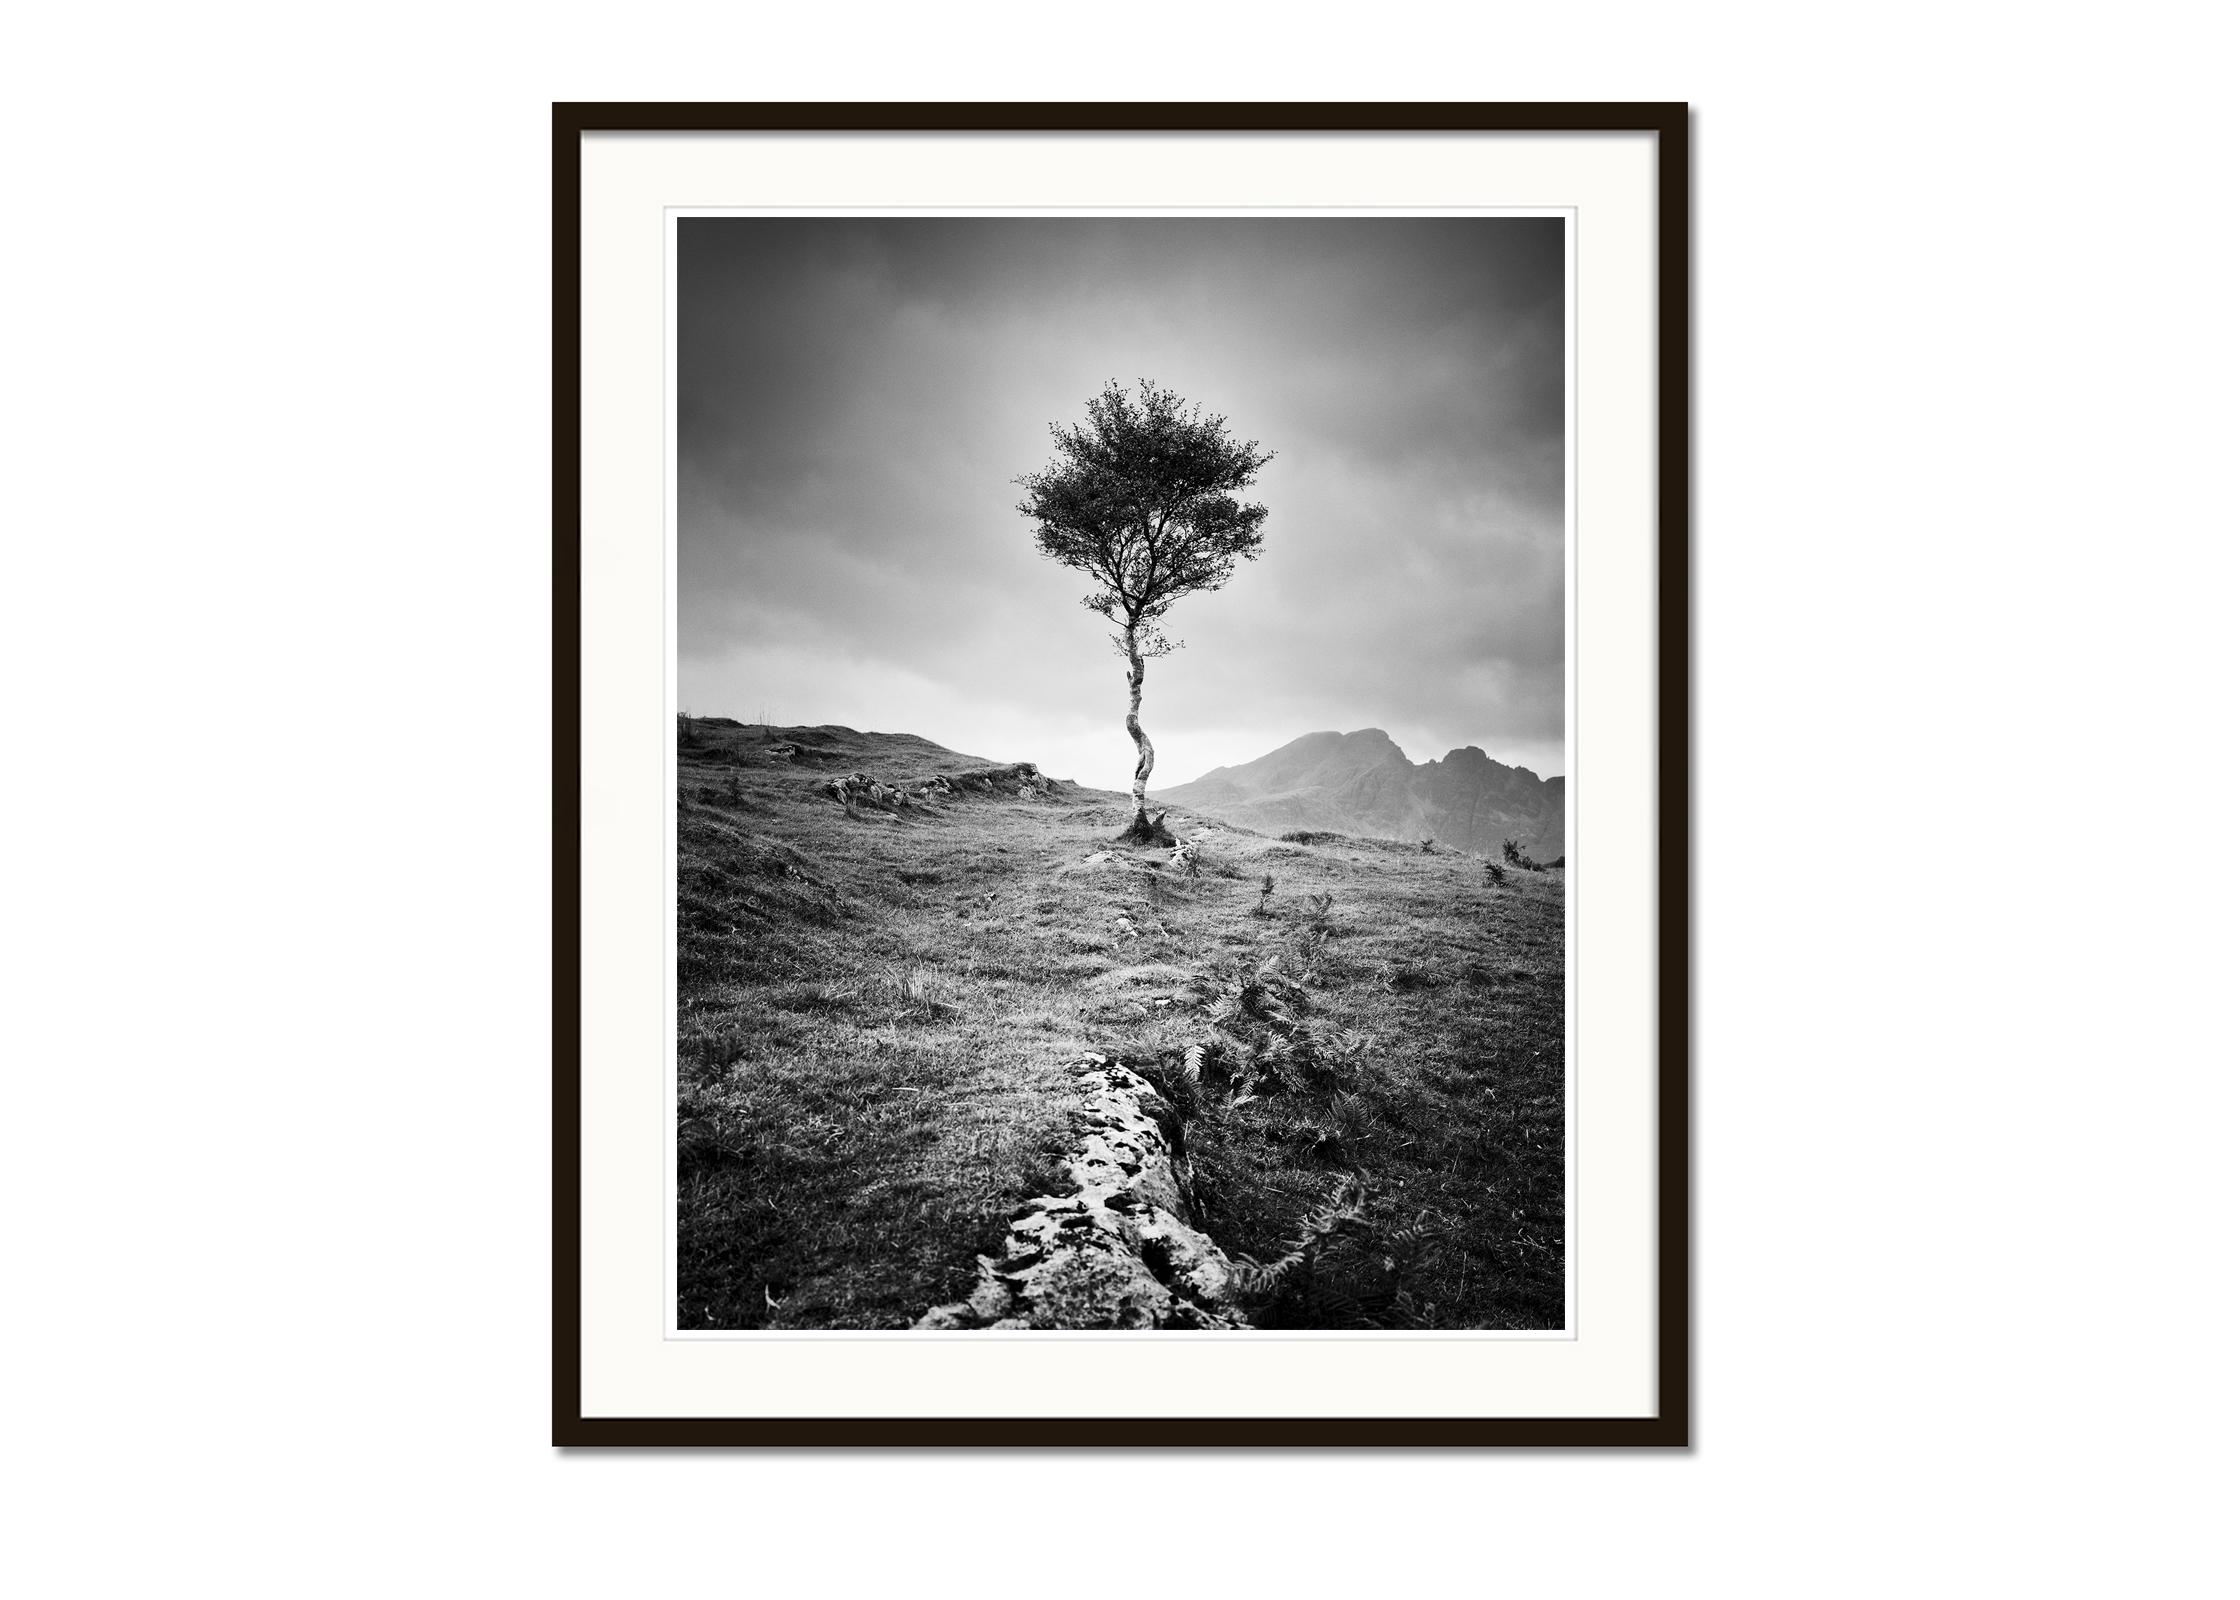 Strong Birch, Isle of Skye, Schottland, Schwarz-Weiß-Fotografie, Landschaft (Grau), Landscape Photograph, von Gerald Berghammer